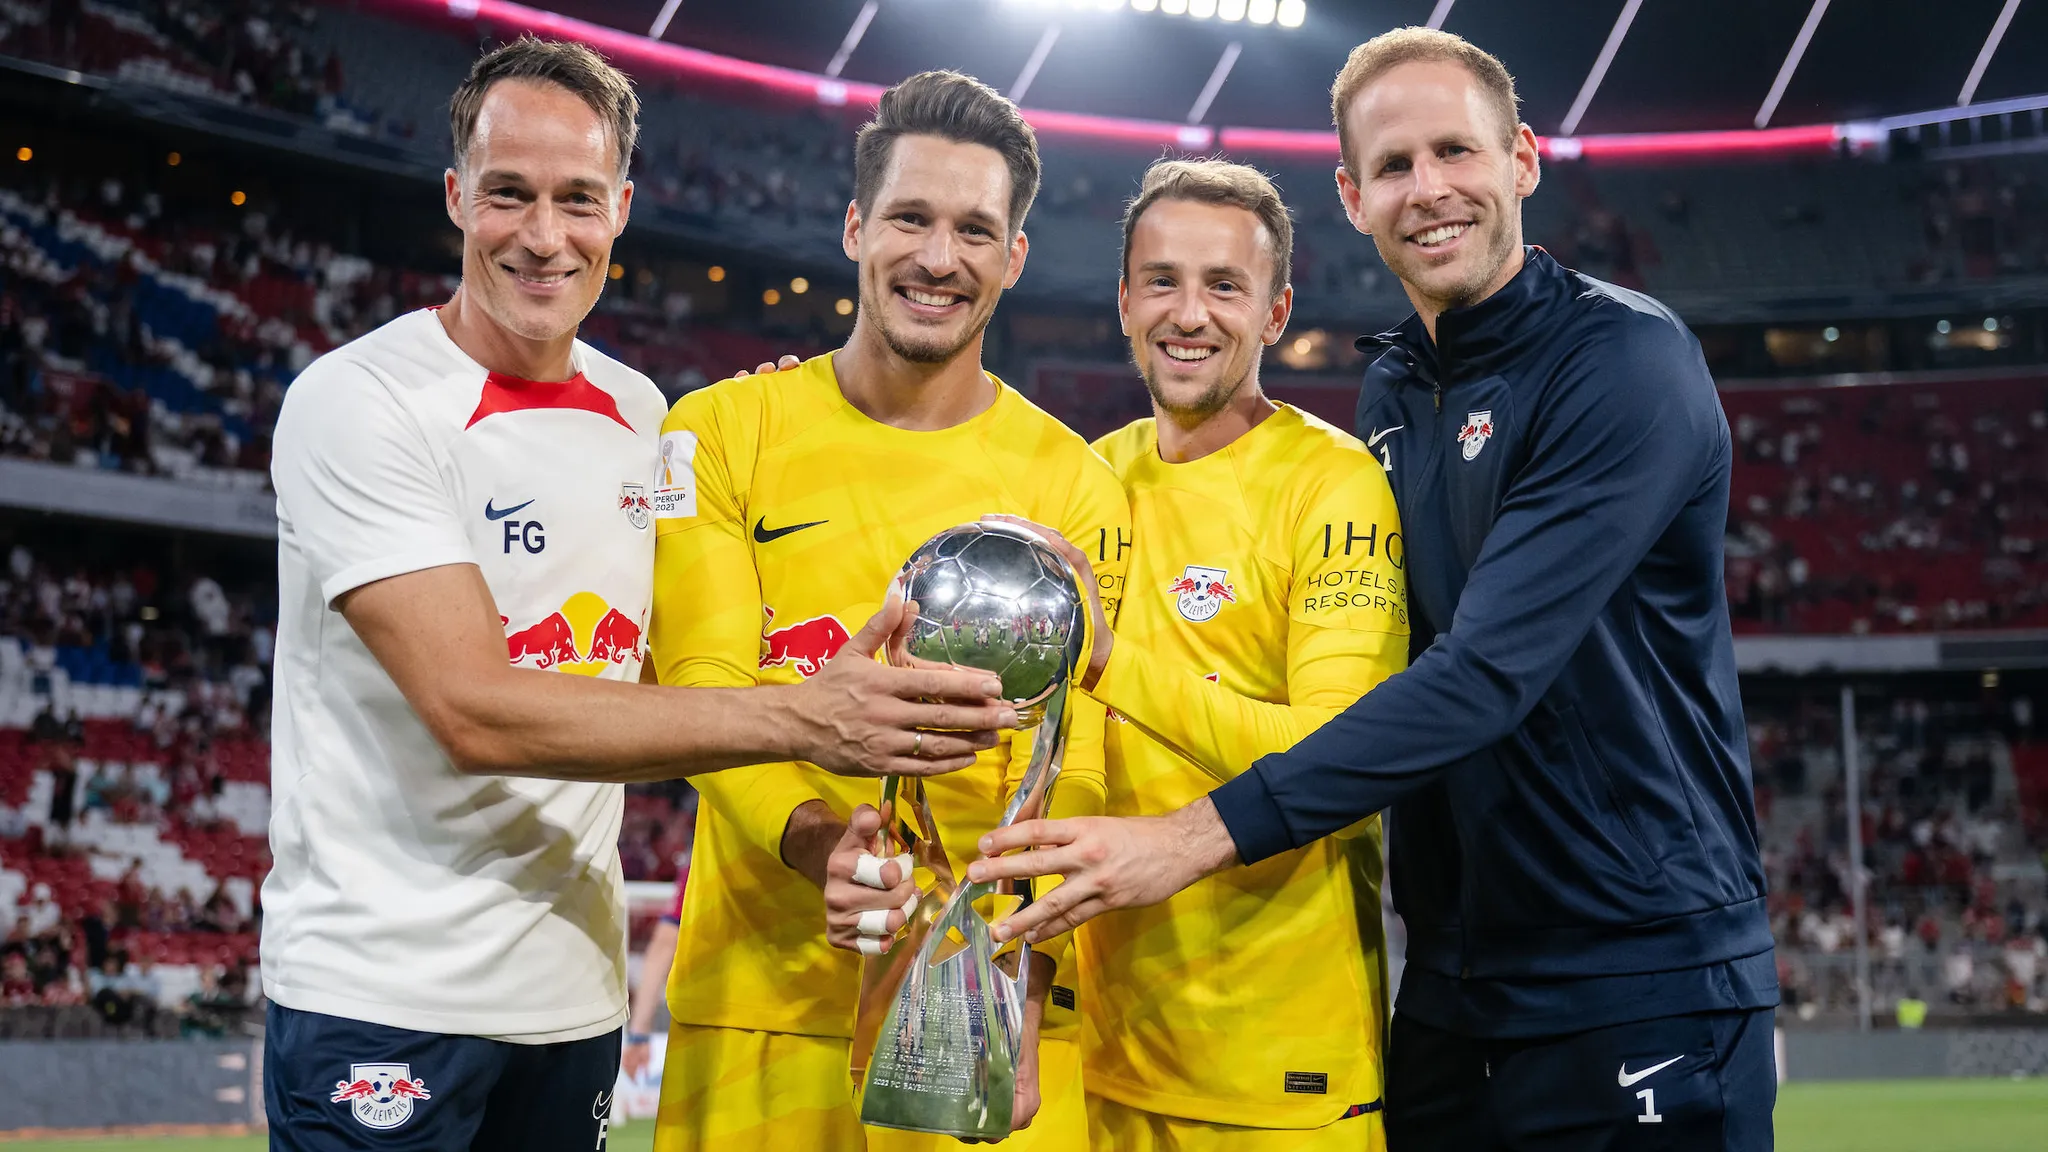 Leipzigs Torwarttrainer Frederik Goessling, Janis Blaswich, Leopold Zingerle und Peter Gulacsi posieren mit der Supercup-Trophäe.